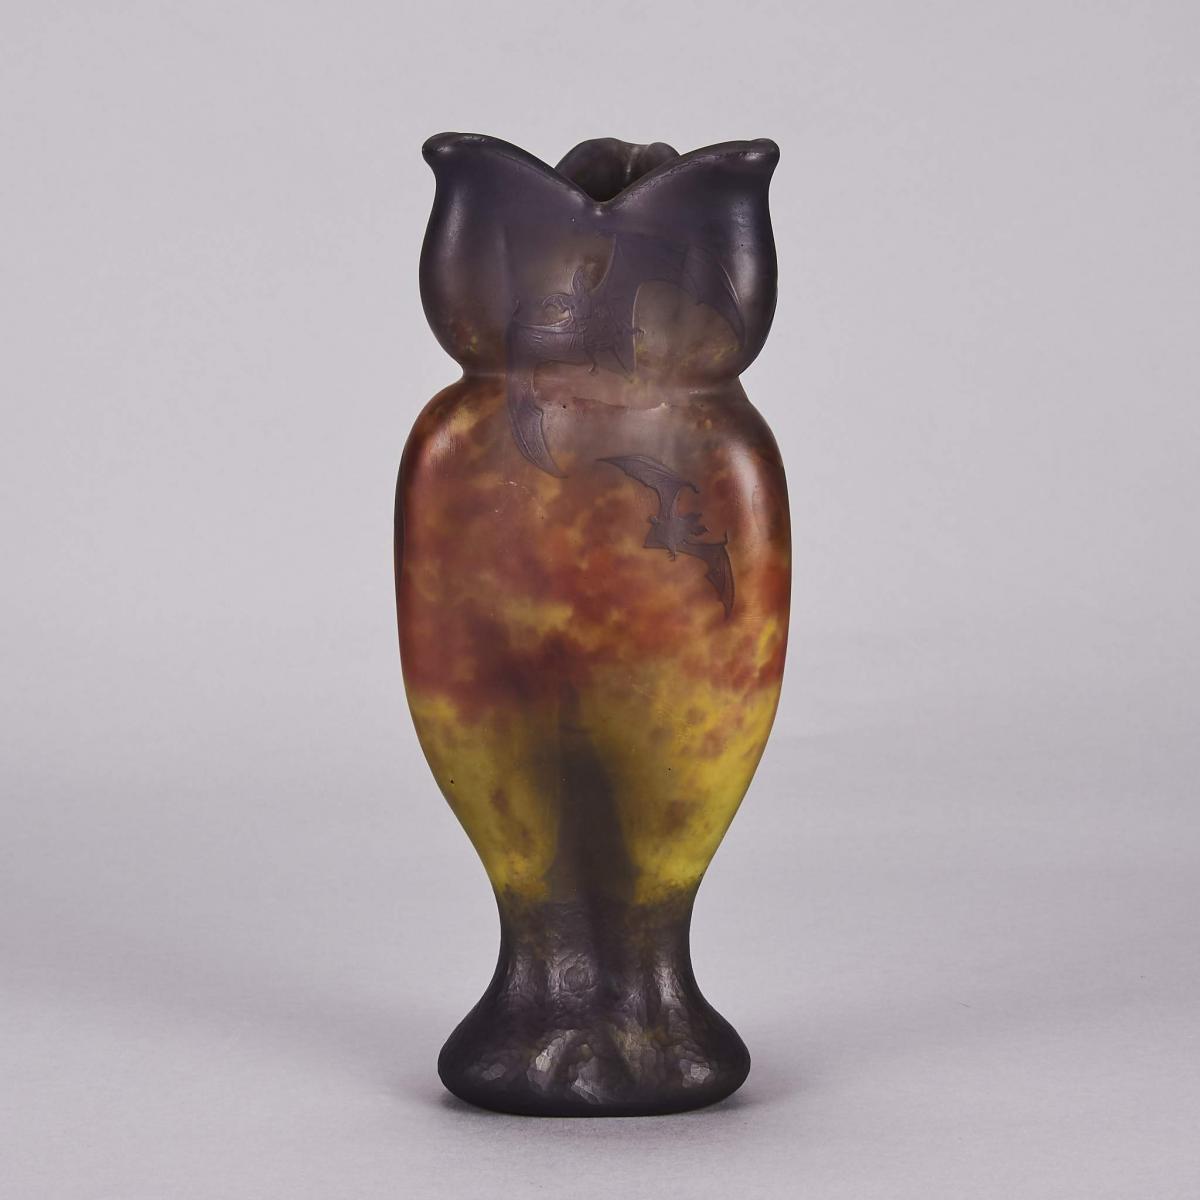 “Bat Vase” Art Nouveau cameo glass vase by Daum Frères - circa 1900